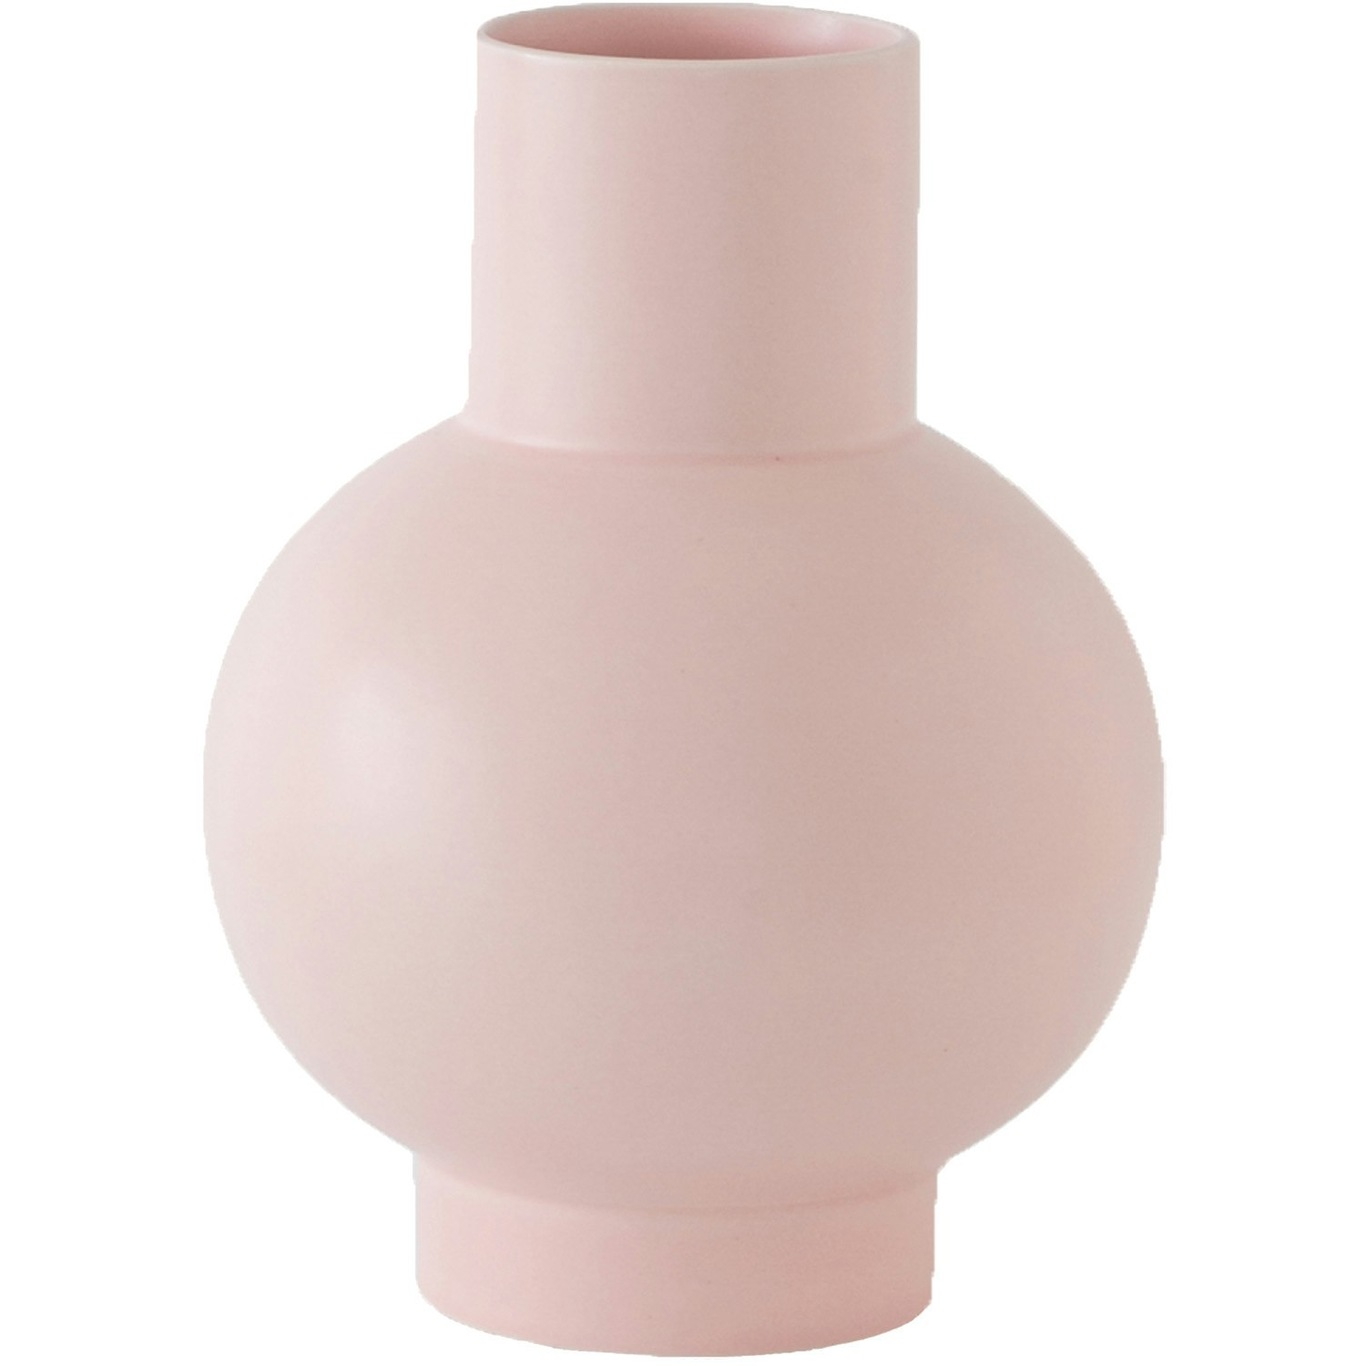 Strøm Vase 33 cm, Coral Blush